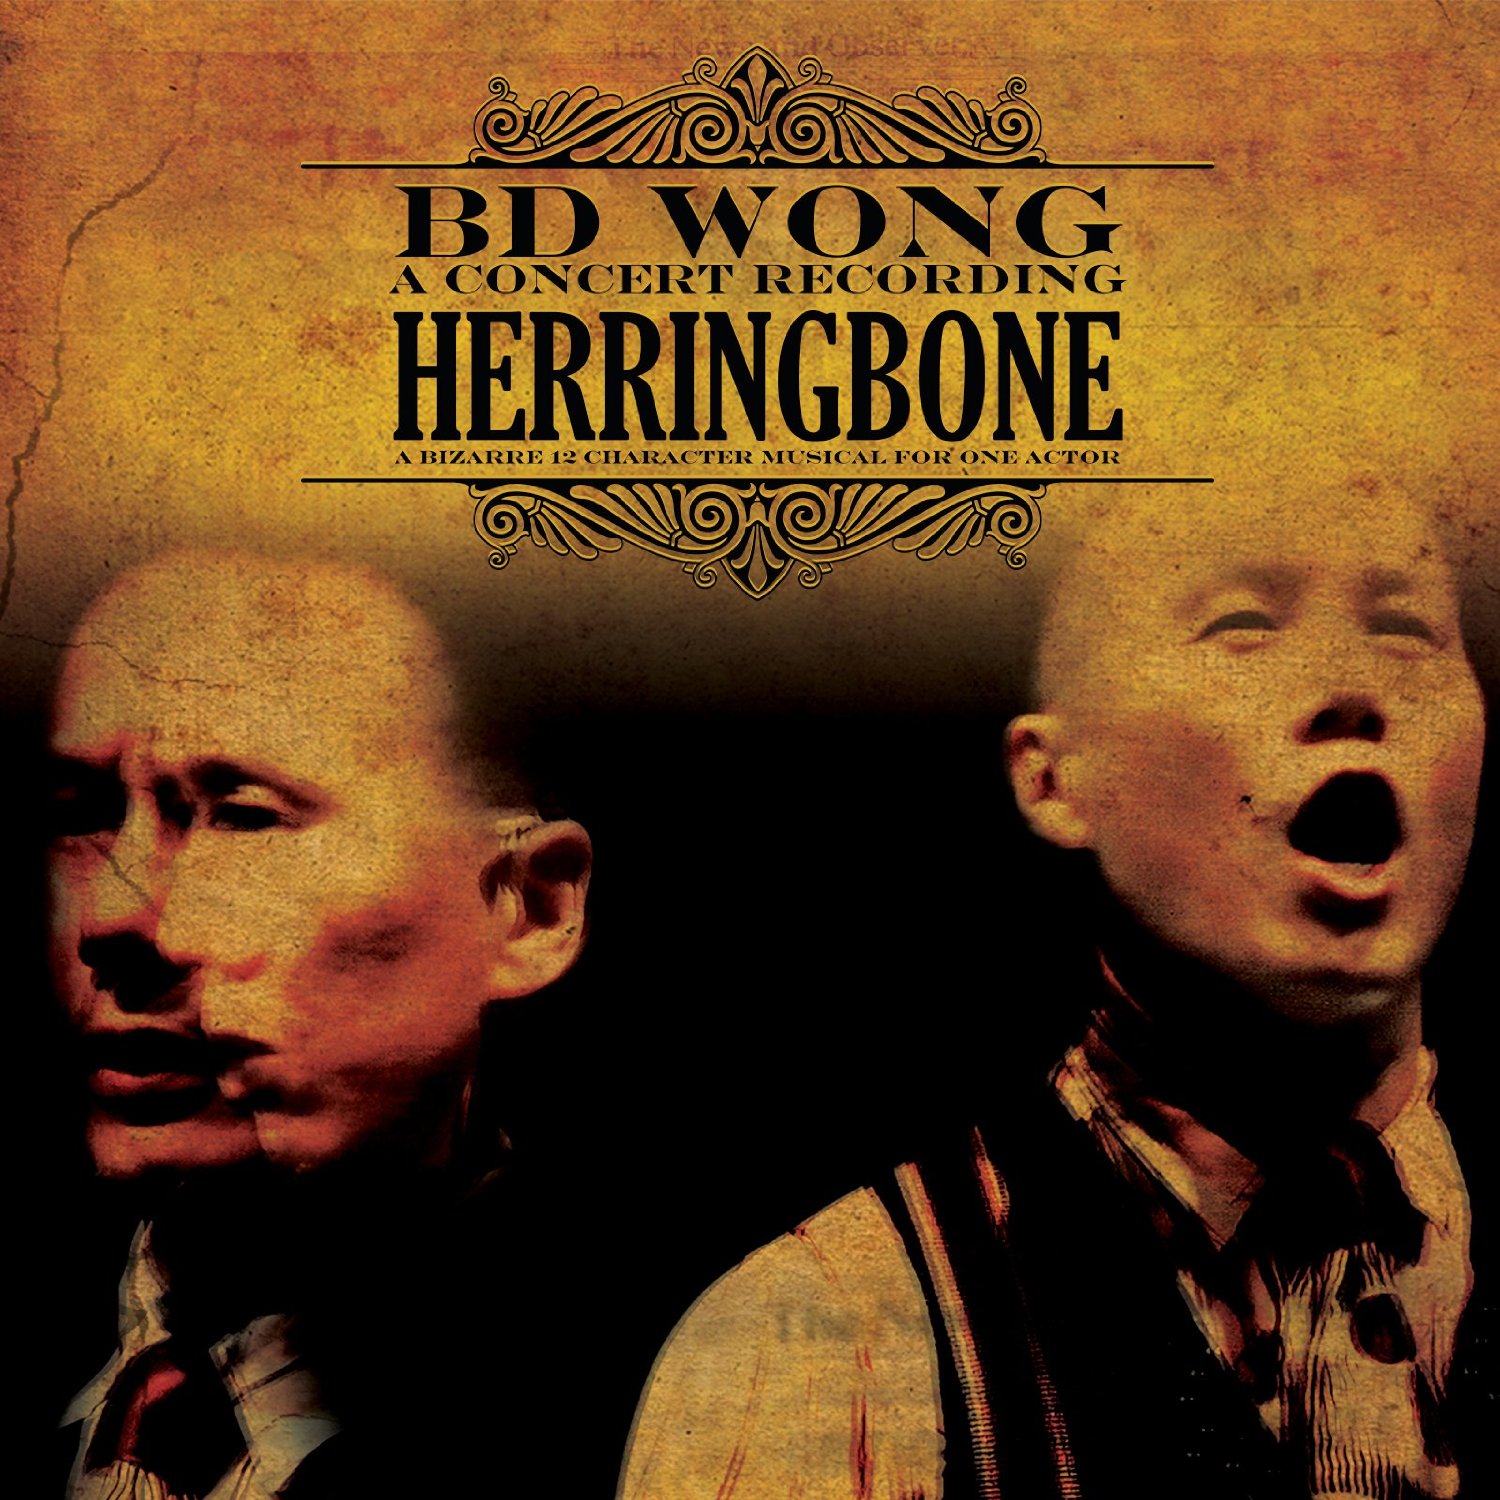 Herringbone (A Concert Recording) - B.D. Wong Album